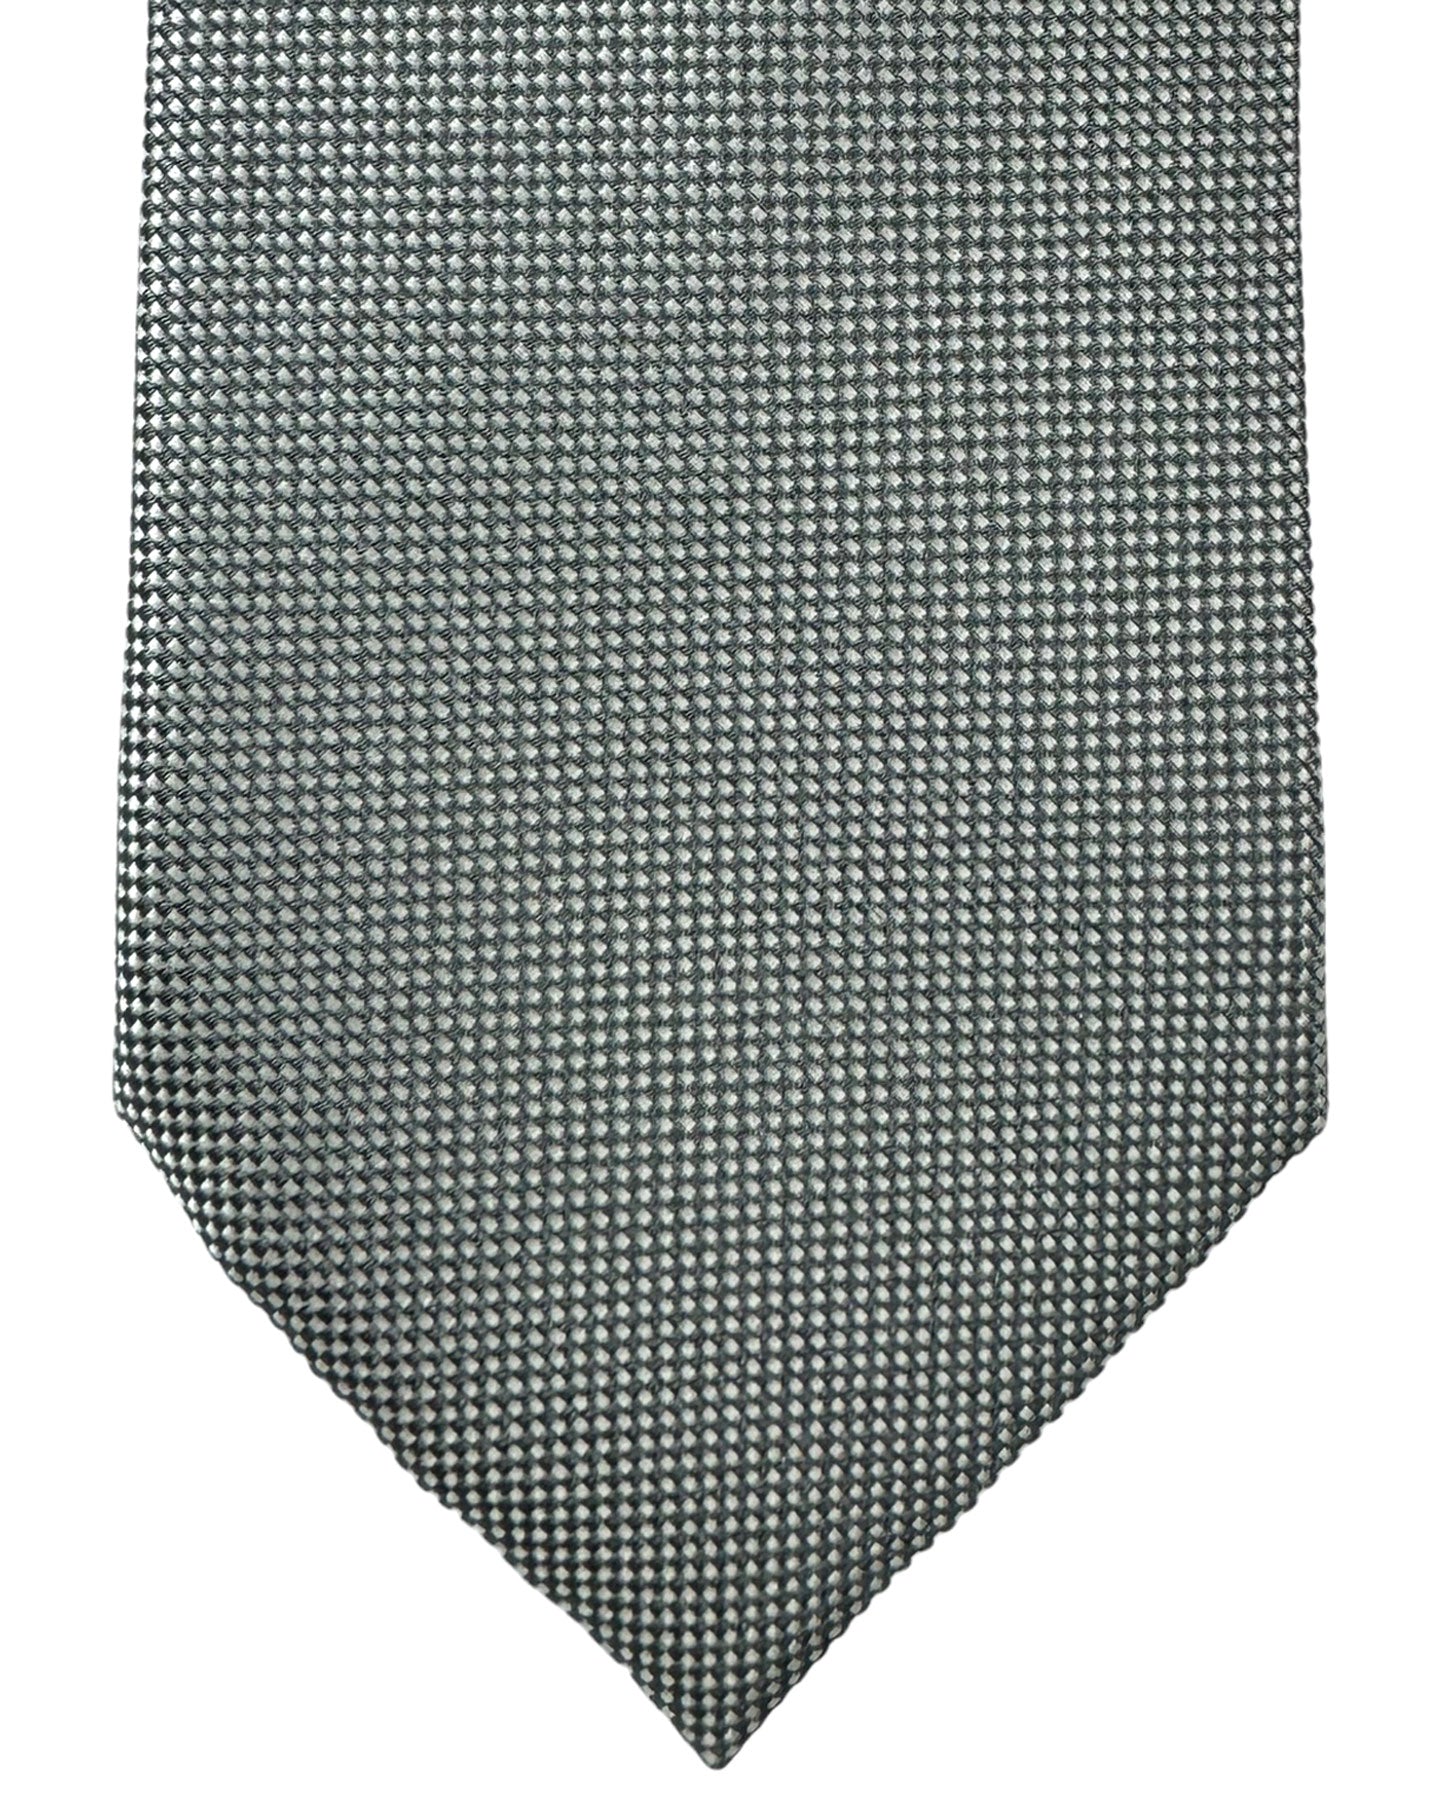 Ermenegildo Zegna Silk Tie Gray Silver Micro Pattern - Hand Made in Italy